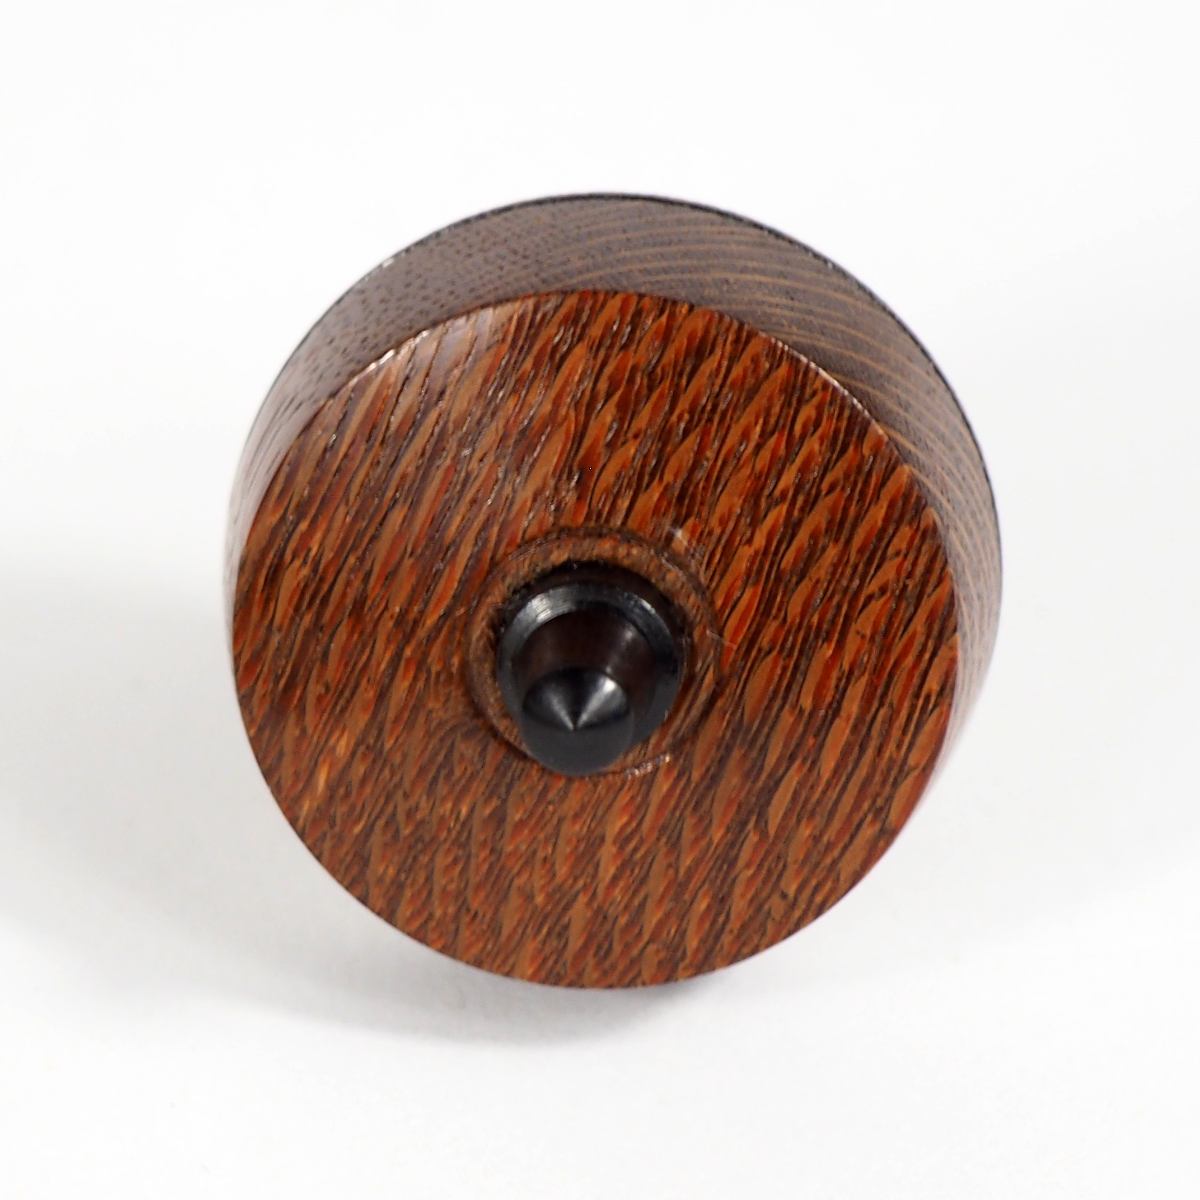 Kunstvoller handgearbeiteter Kreisel aus Perlholz mit Messing-Einlage